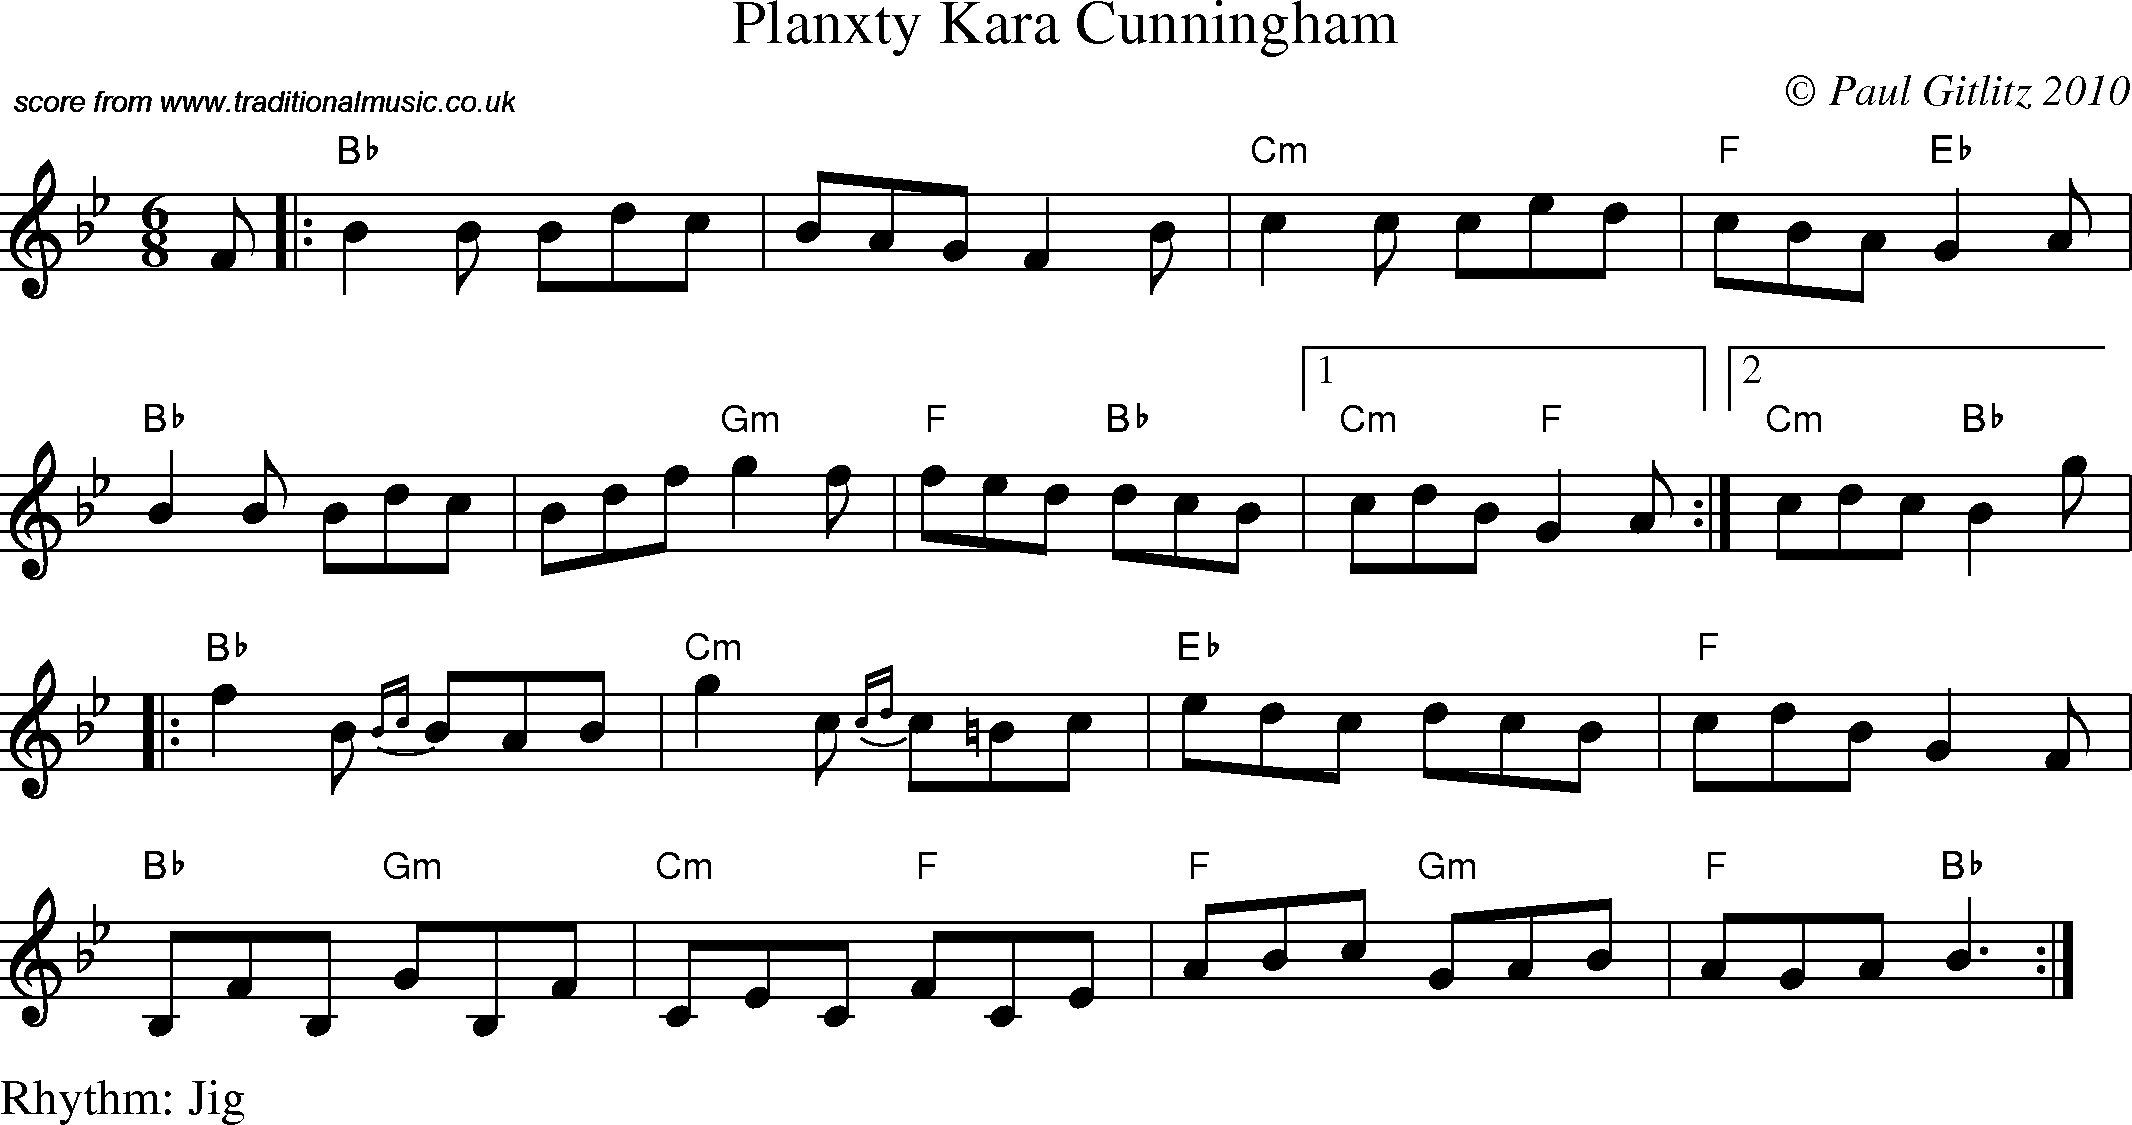 Sheet Music Score for Jig - Planxty Kara Cunningham